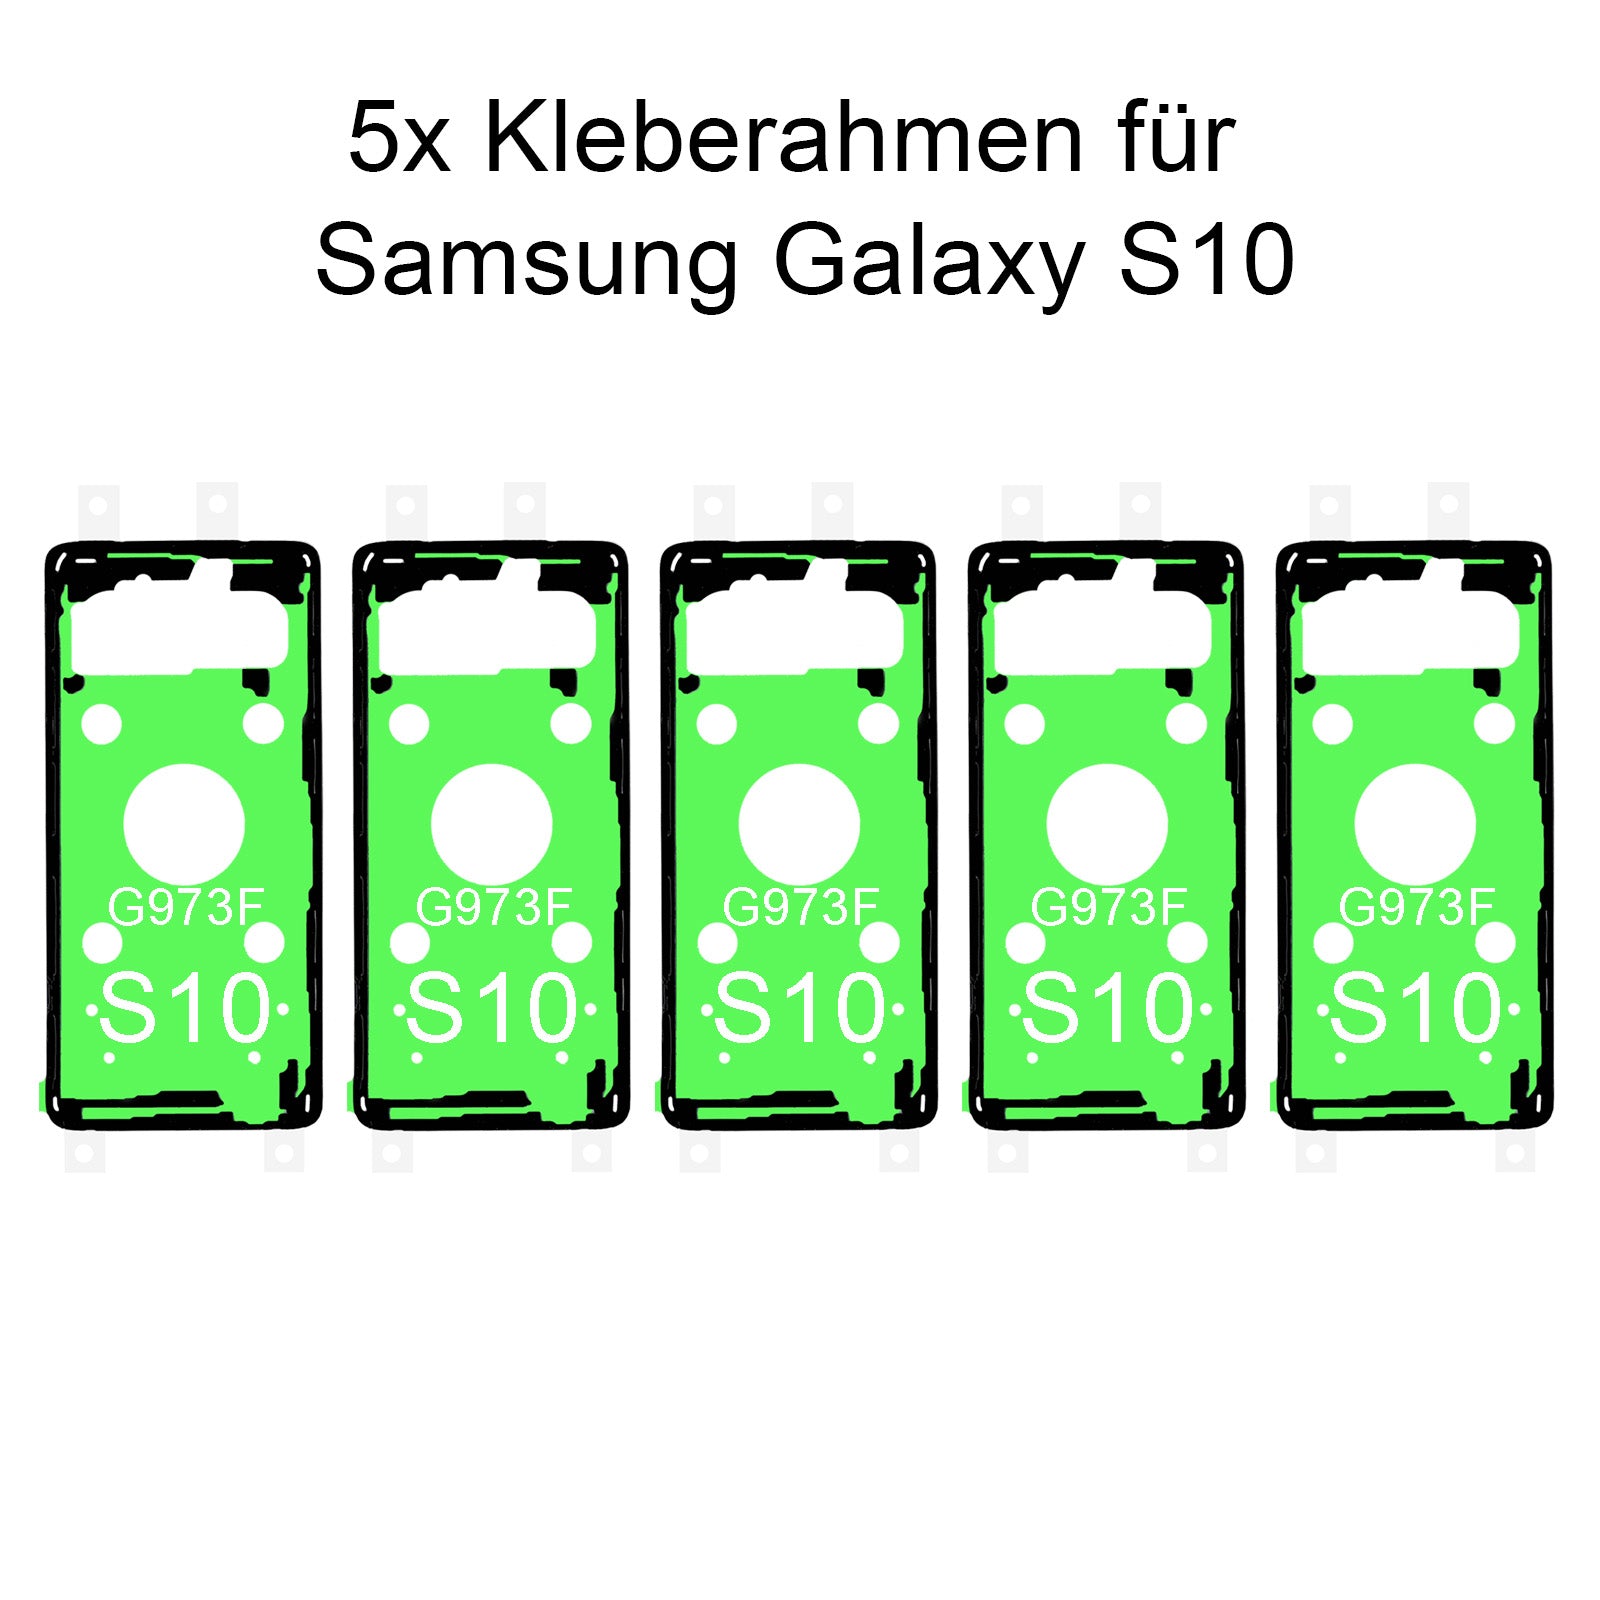 5x von unsern Samsung Galaxy S10 G973F Kleberahmen, jetzt im Dinngsonline Shop entdecken und bestellen!